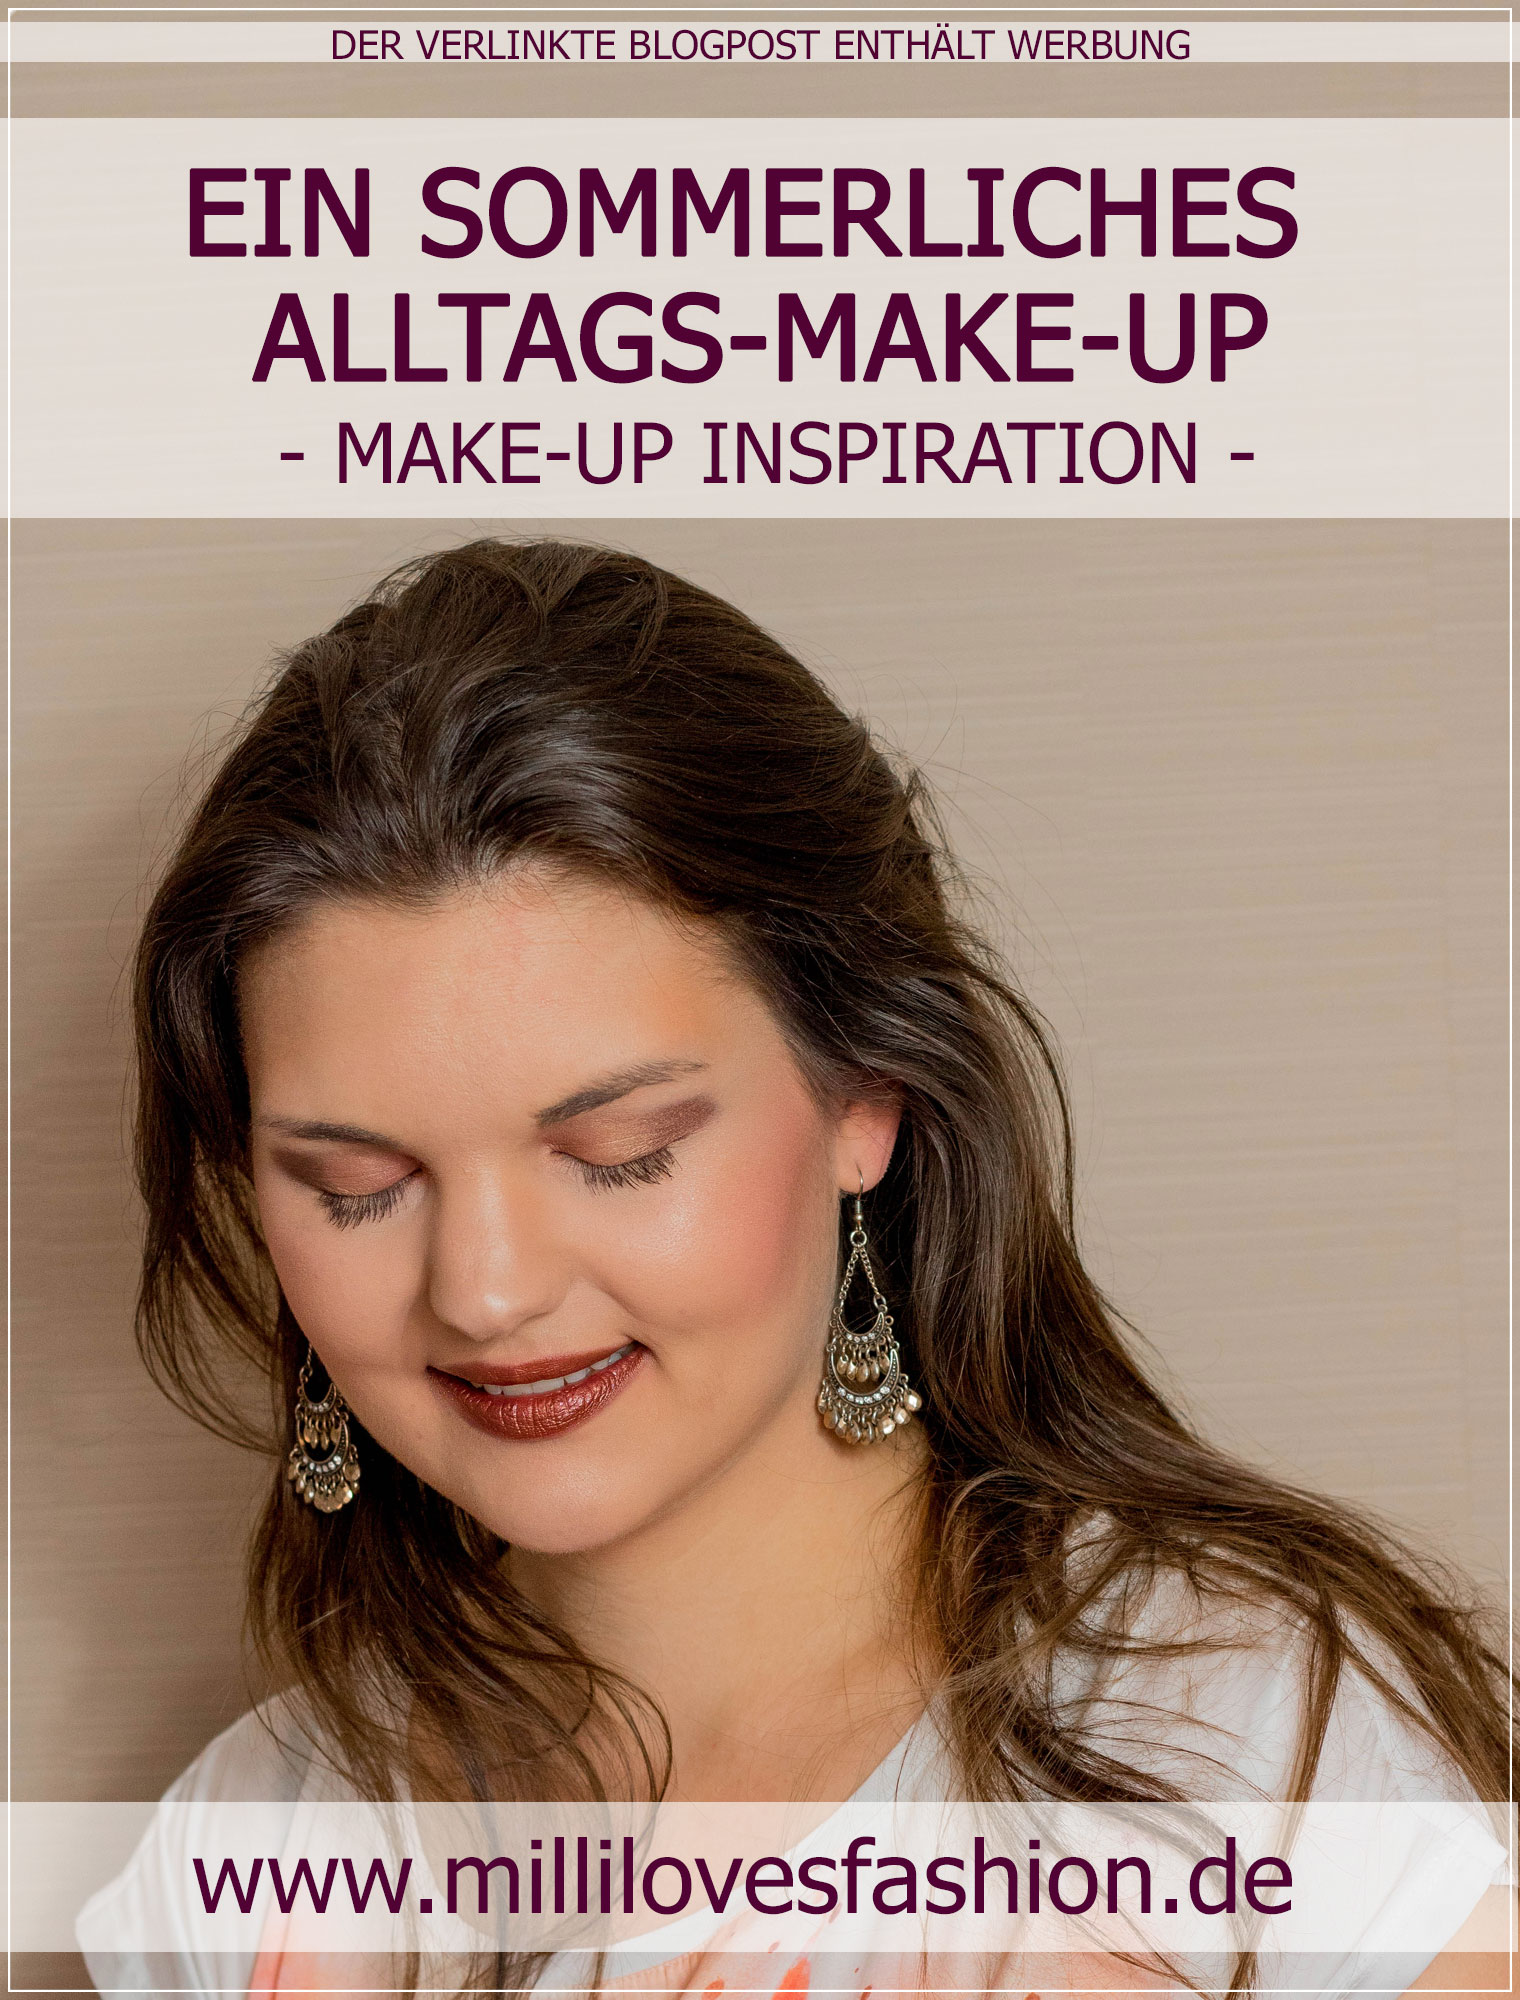 leichtes Alltags-Make-Up, Alltags-Make-Up, Sommer-Make-Up, Summer-Make-Up, DIY-Make-Up, Beautytutorial, Make-up Tutorial, Beauty Blog, Beautybloggerin, Ruhrgebiet